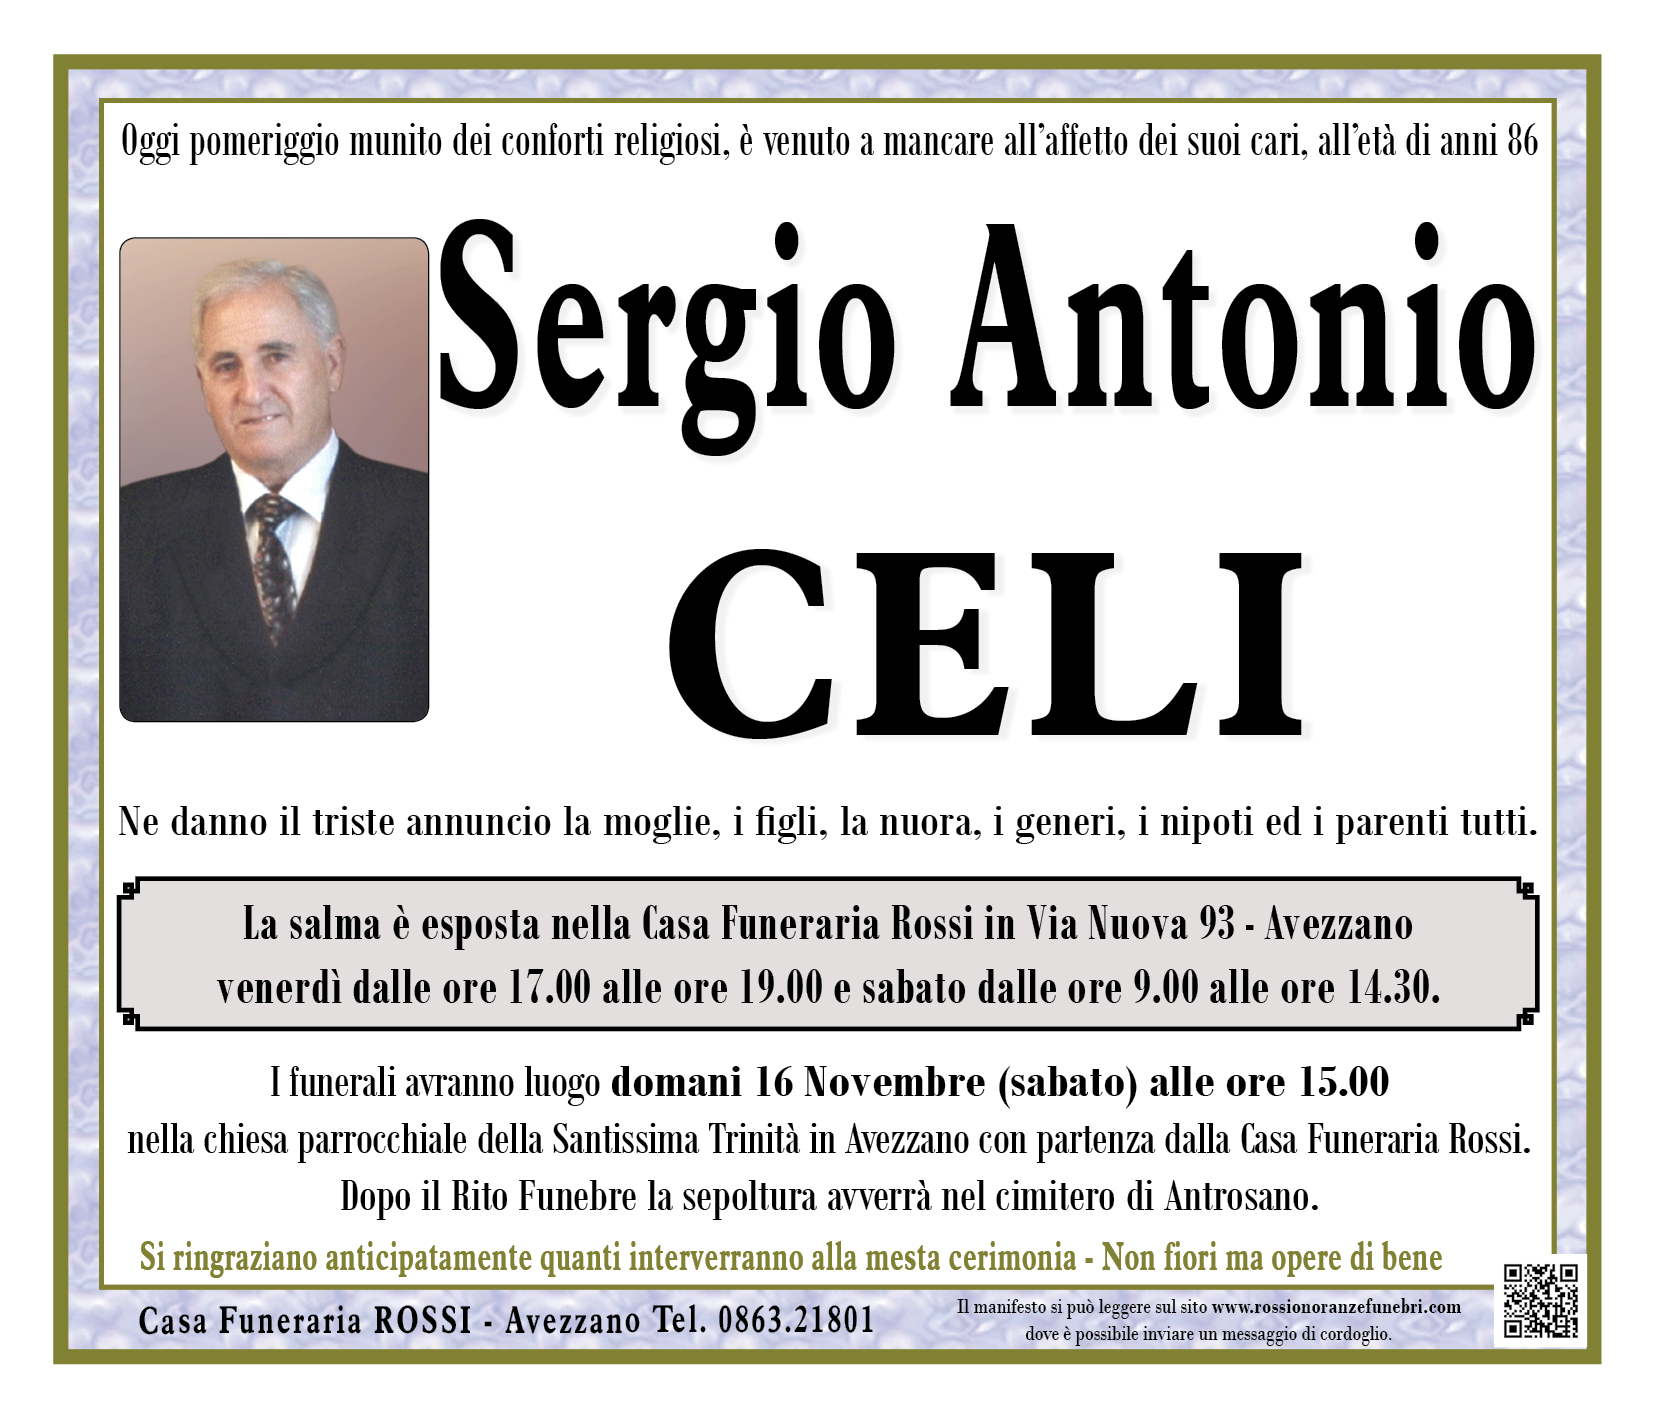 Sergio Antonio Celi